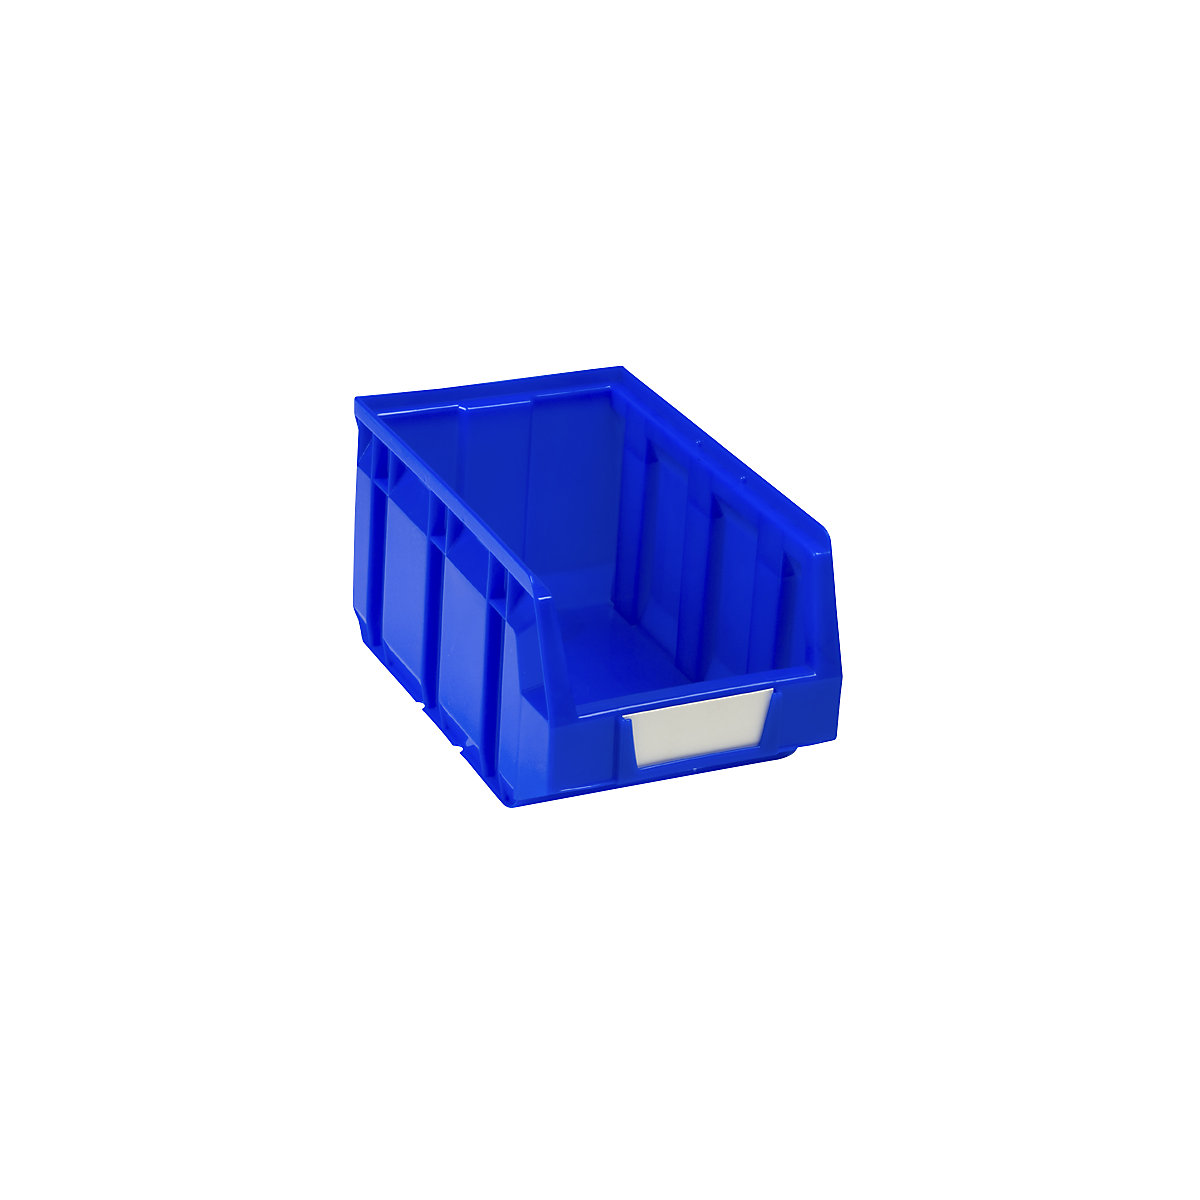 Prepravka s viditeľným obsahom z polyetylénu, d x š x v 237 x 144 x 123 mm, modrá, OJ 38 ks-7